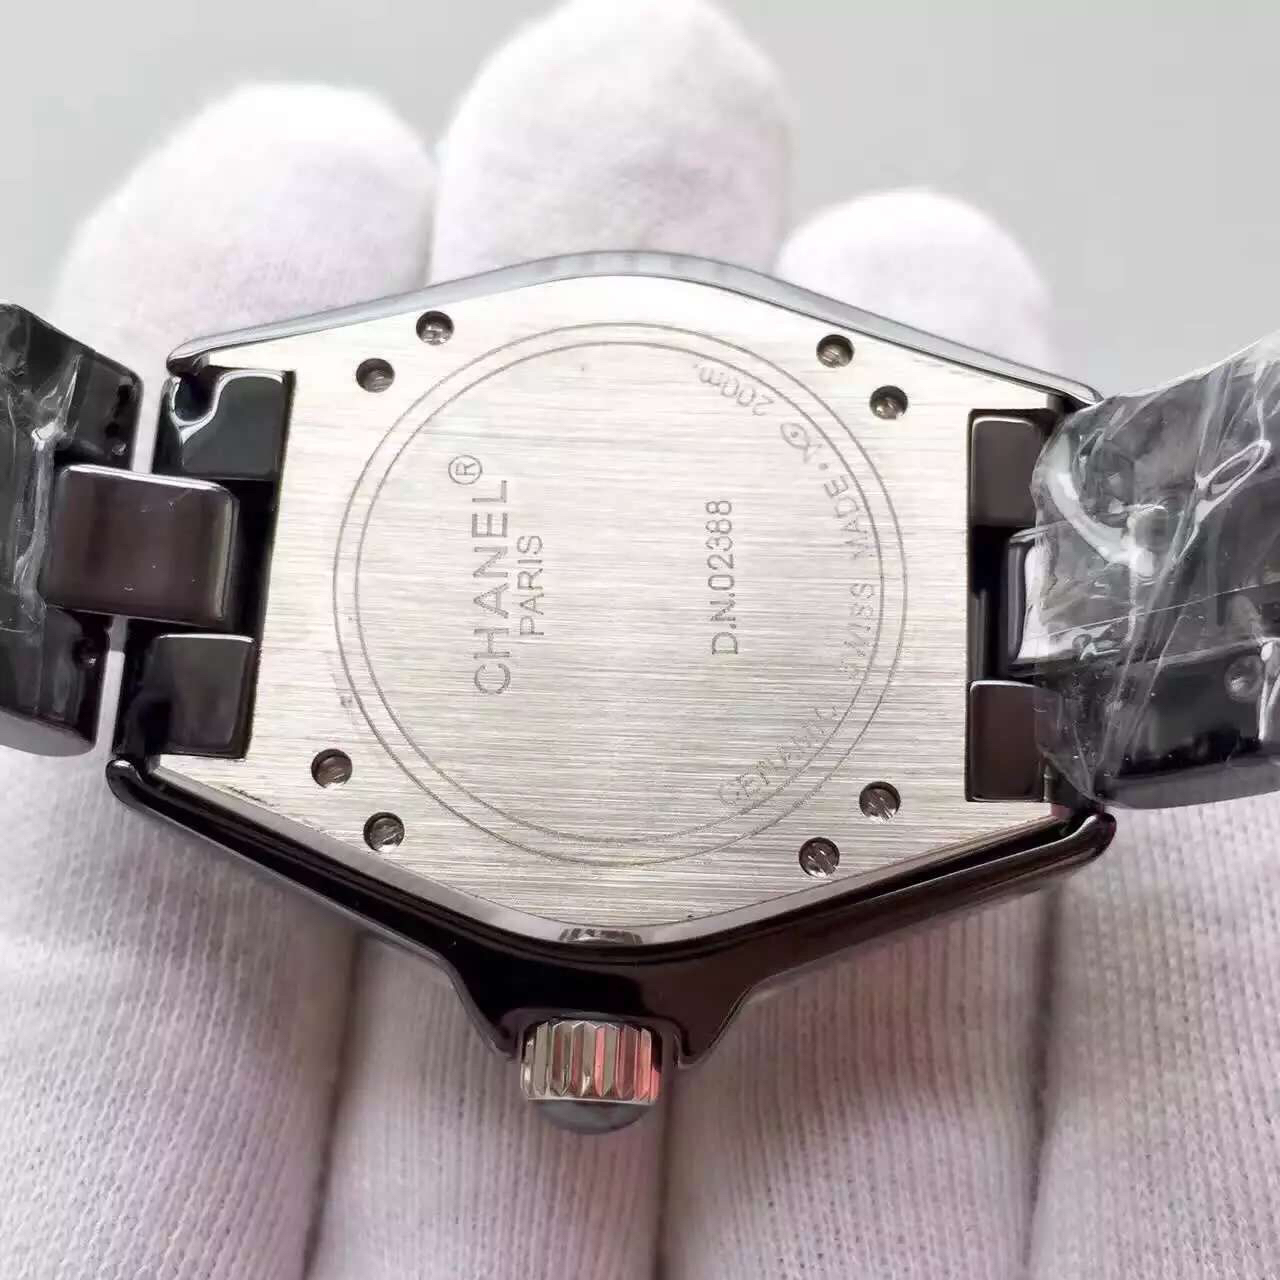 202212261225455 - 仿香奈兒手錶多少錢 香奈兒J12繫列H0969黑自動機械錶￥2880